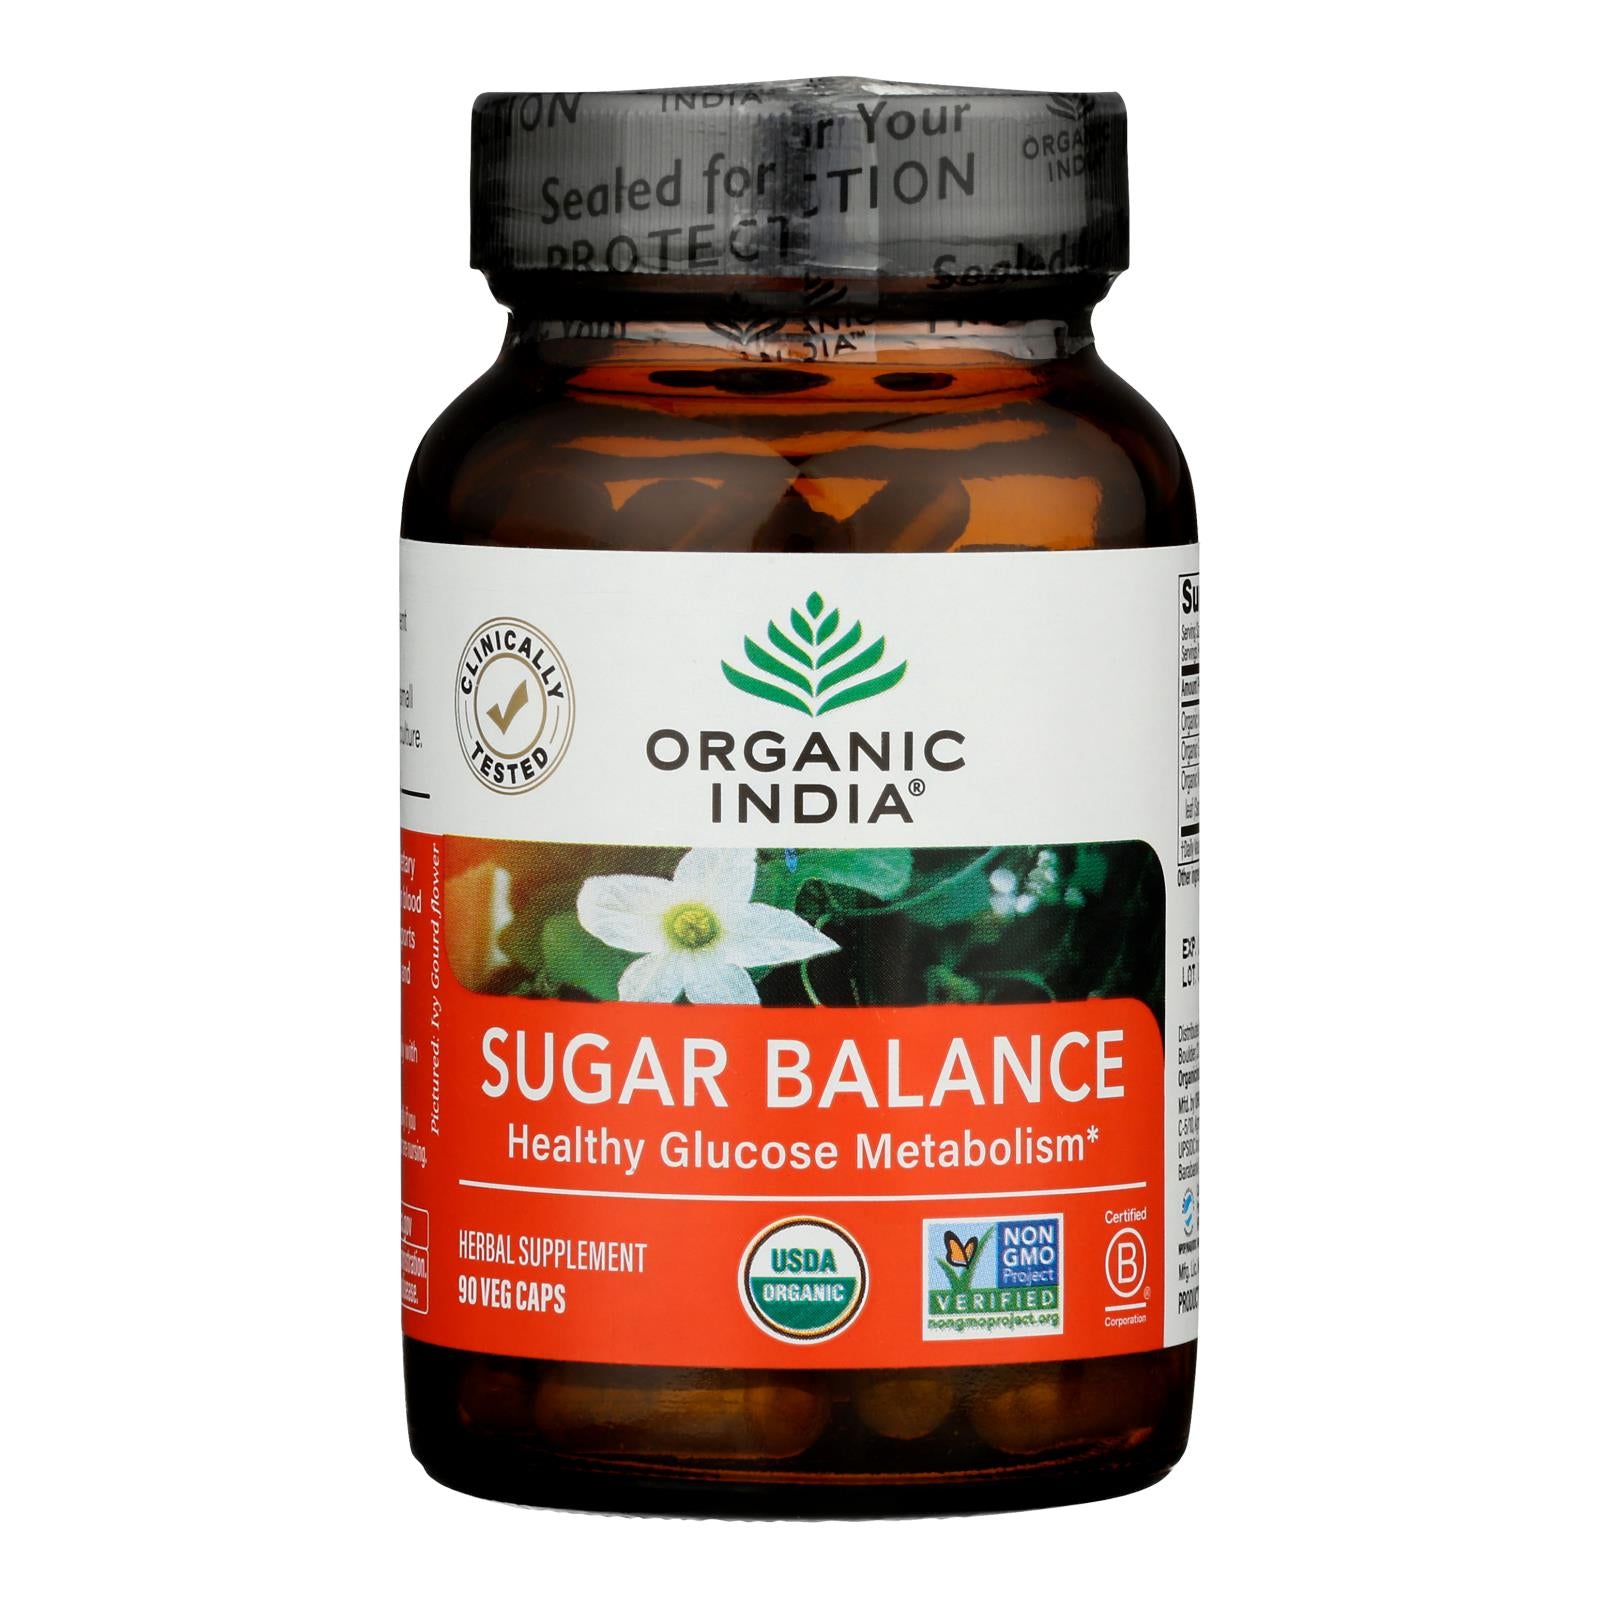 Organic India - Sugar Balance - 1 Each -90 Vcap